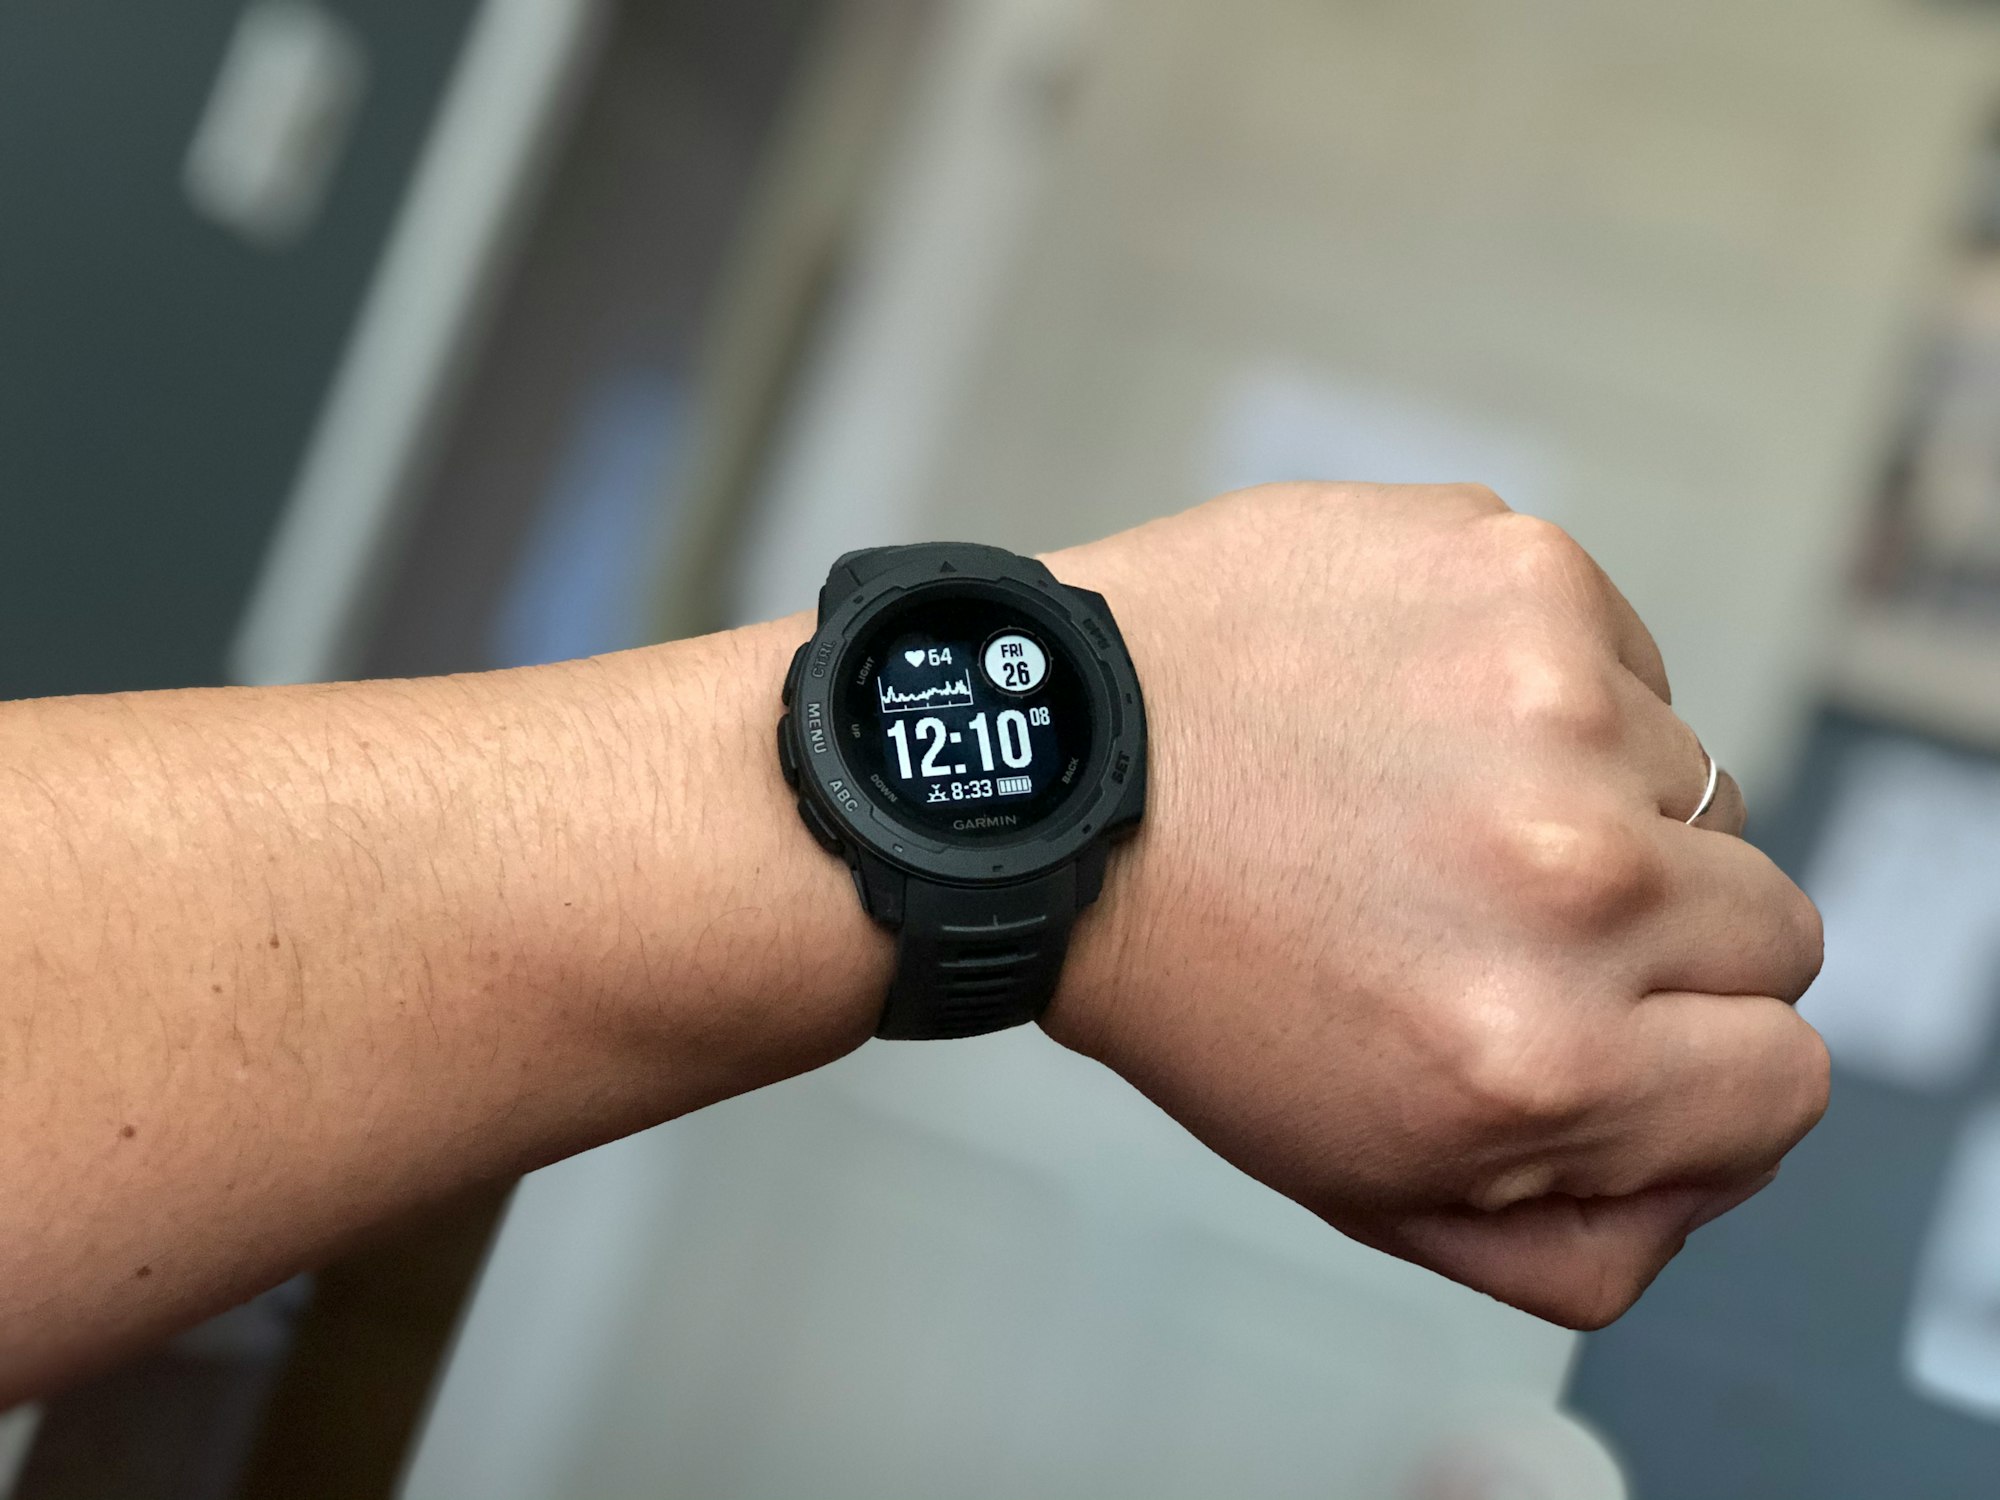 A runner wearing a smart watch